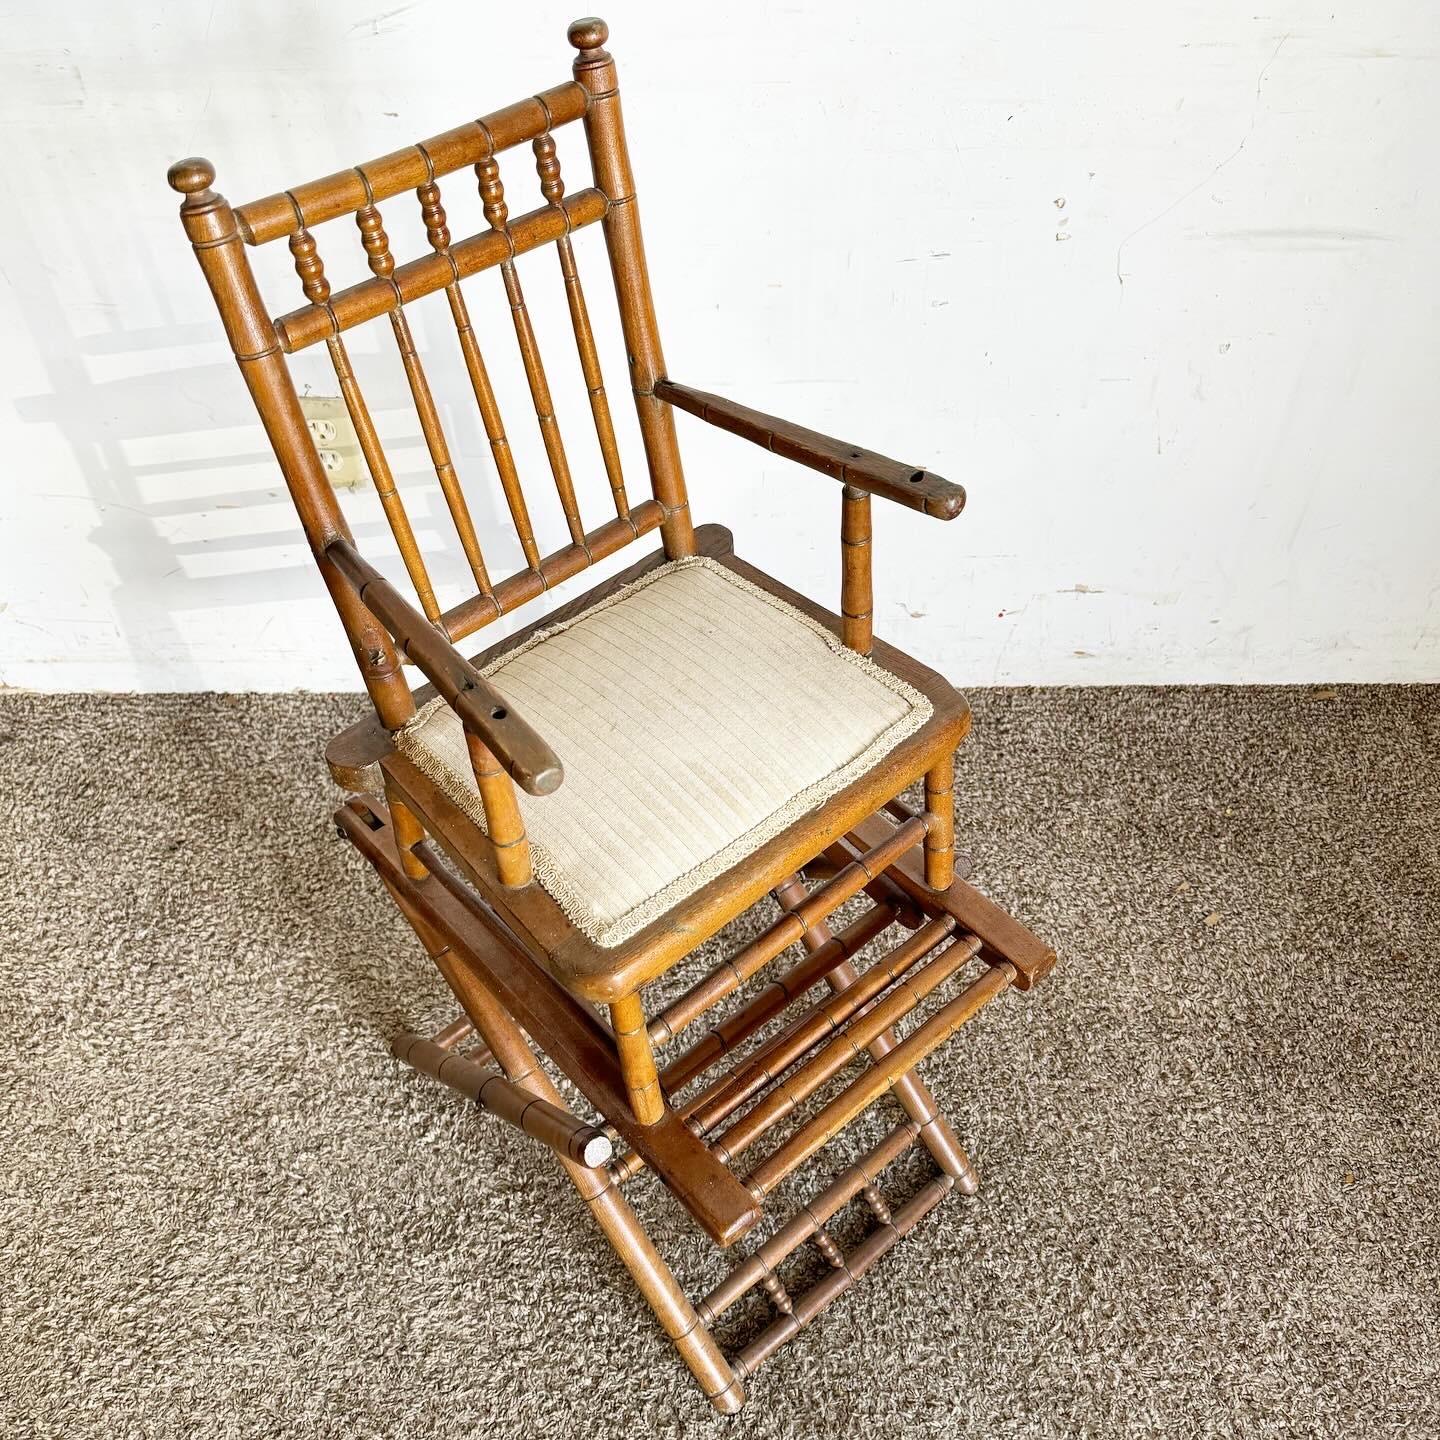 Découvrez l'élégance d'une chaise haute pliante en bois antique, alliant charme vintage et design fonctionnel.
Les pièces vintage peuvent présenter des signes d'usure liés à l'âge. Examinez attentivement les photos, posez des questions et demandez